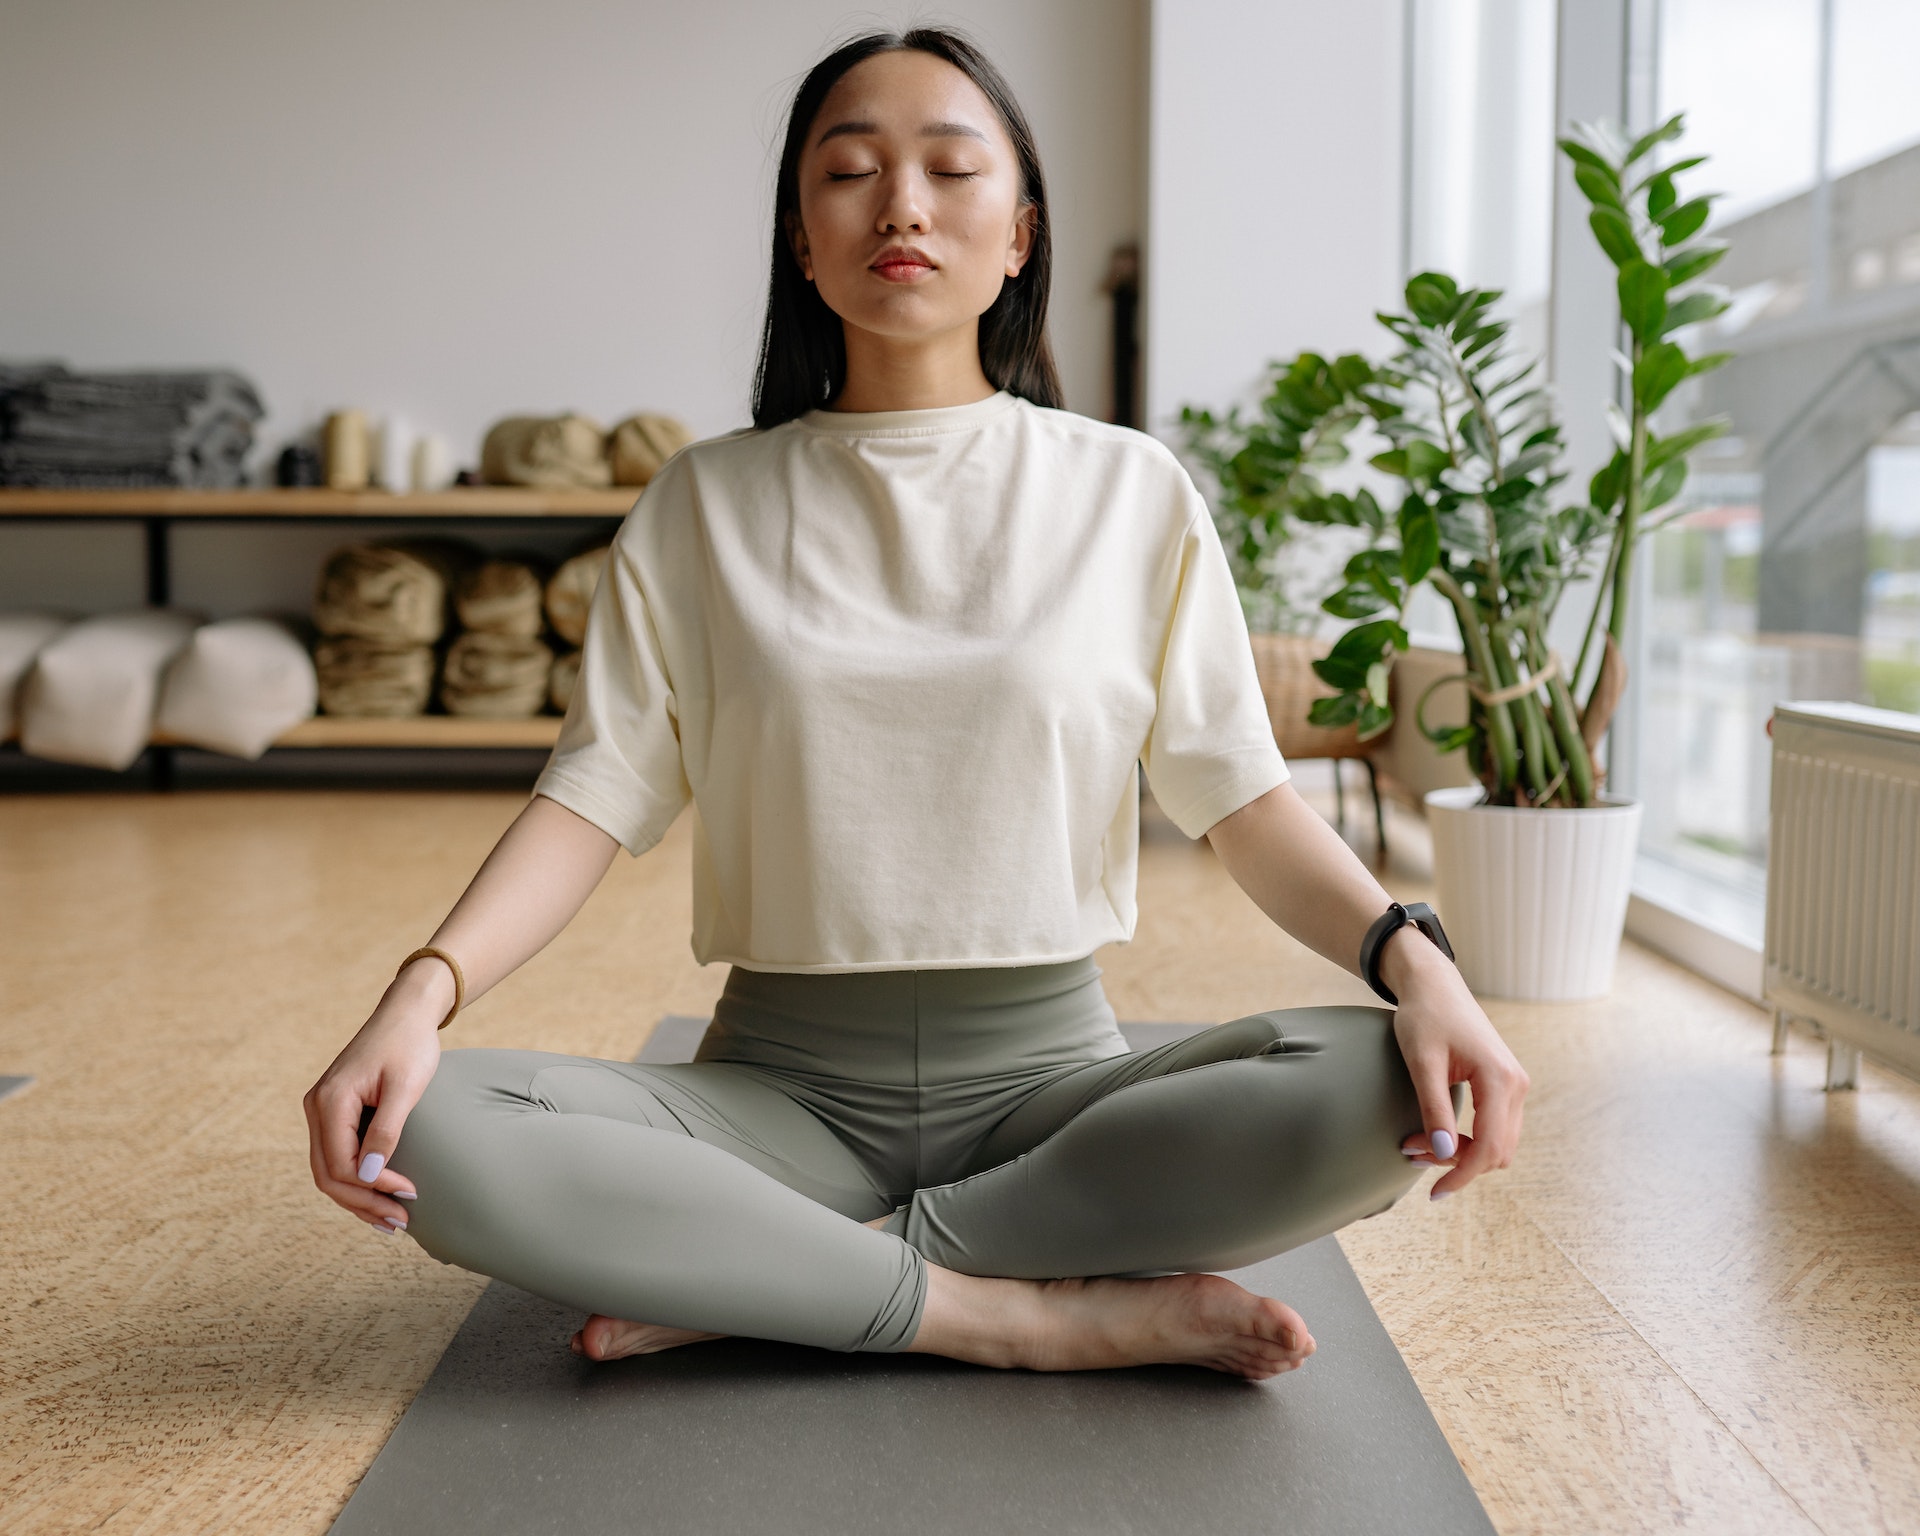 mantra meditation versus breath meditation